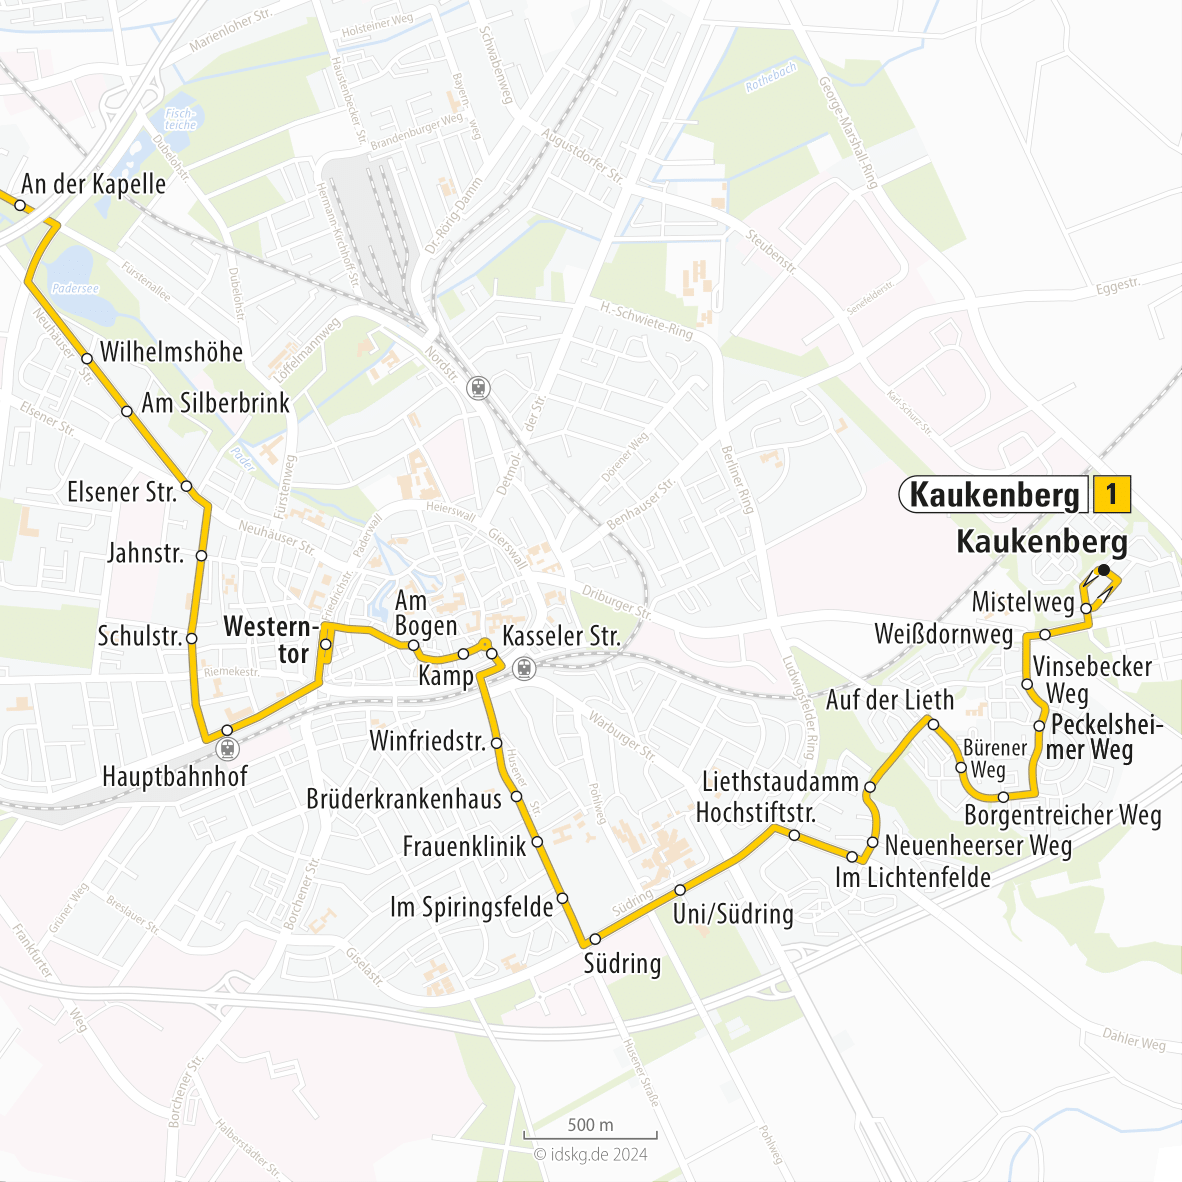 Kartenausschnitt der Linie 1 an der Kapelle bis Kaukenberg 15x15